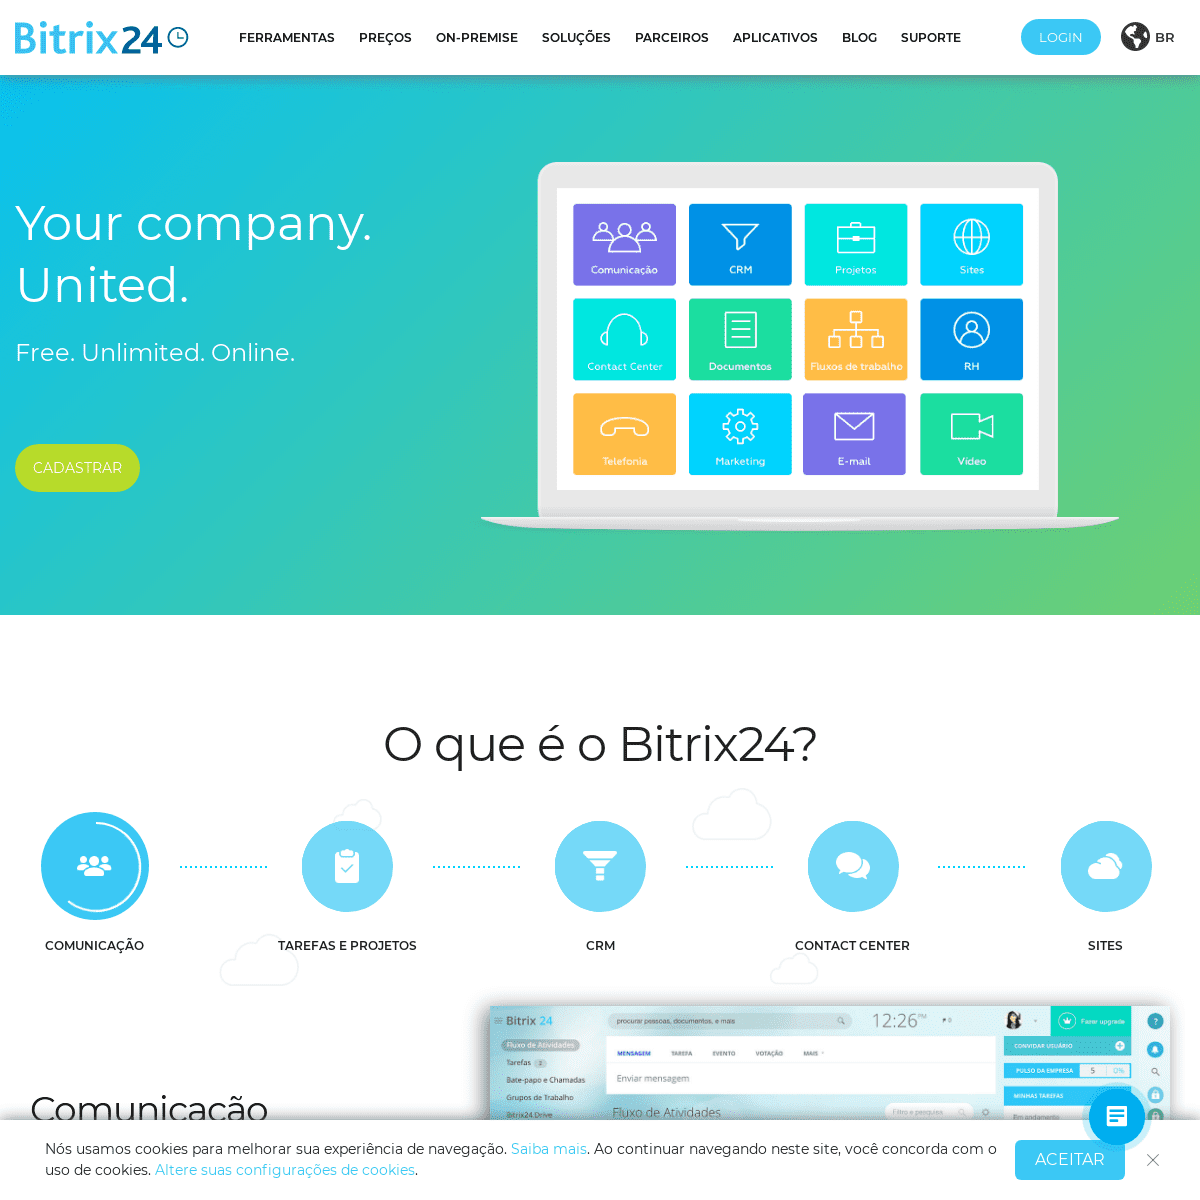 A complete backup of bitrix24.com.br